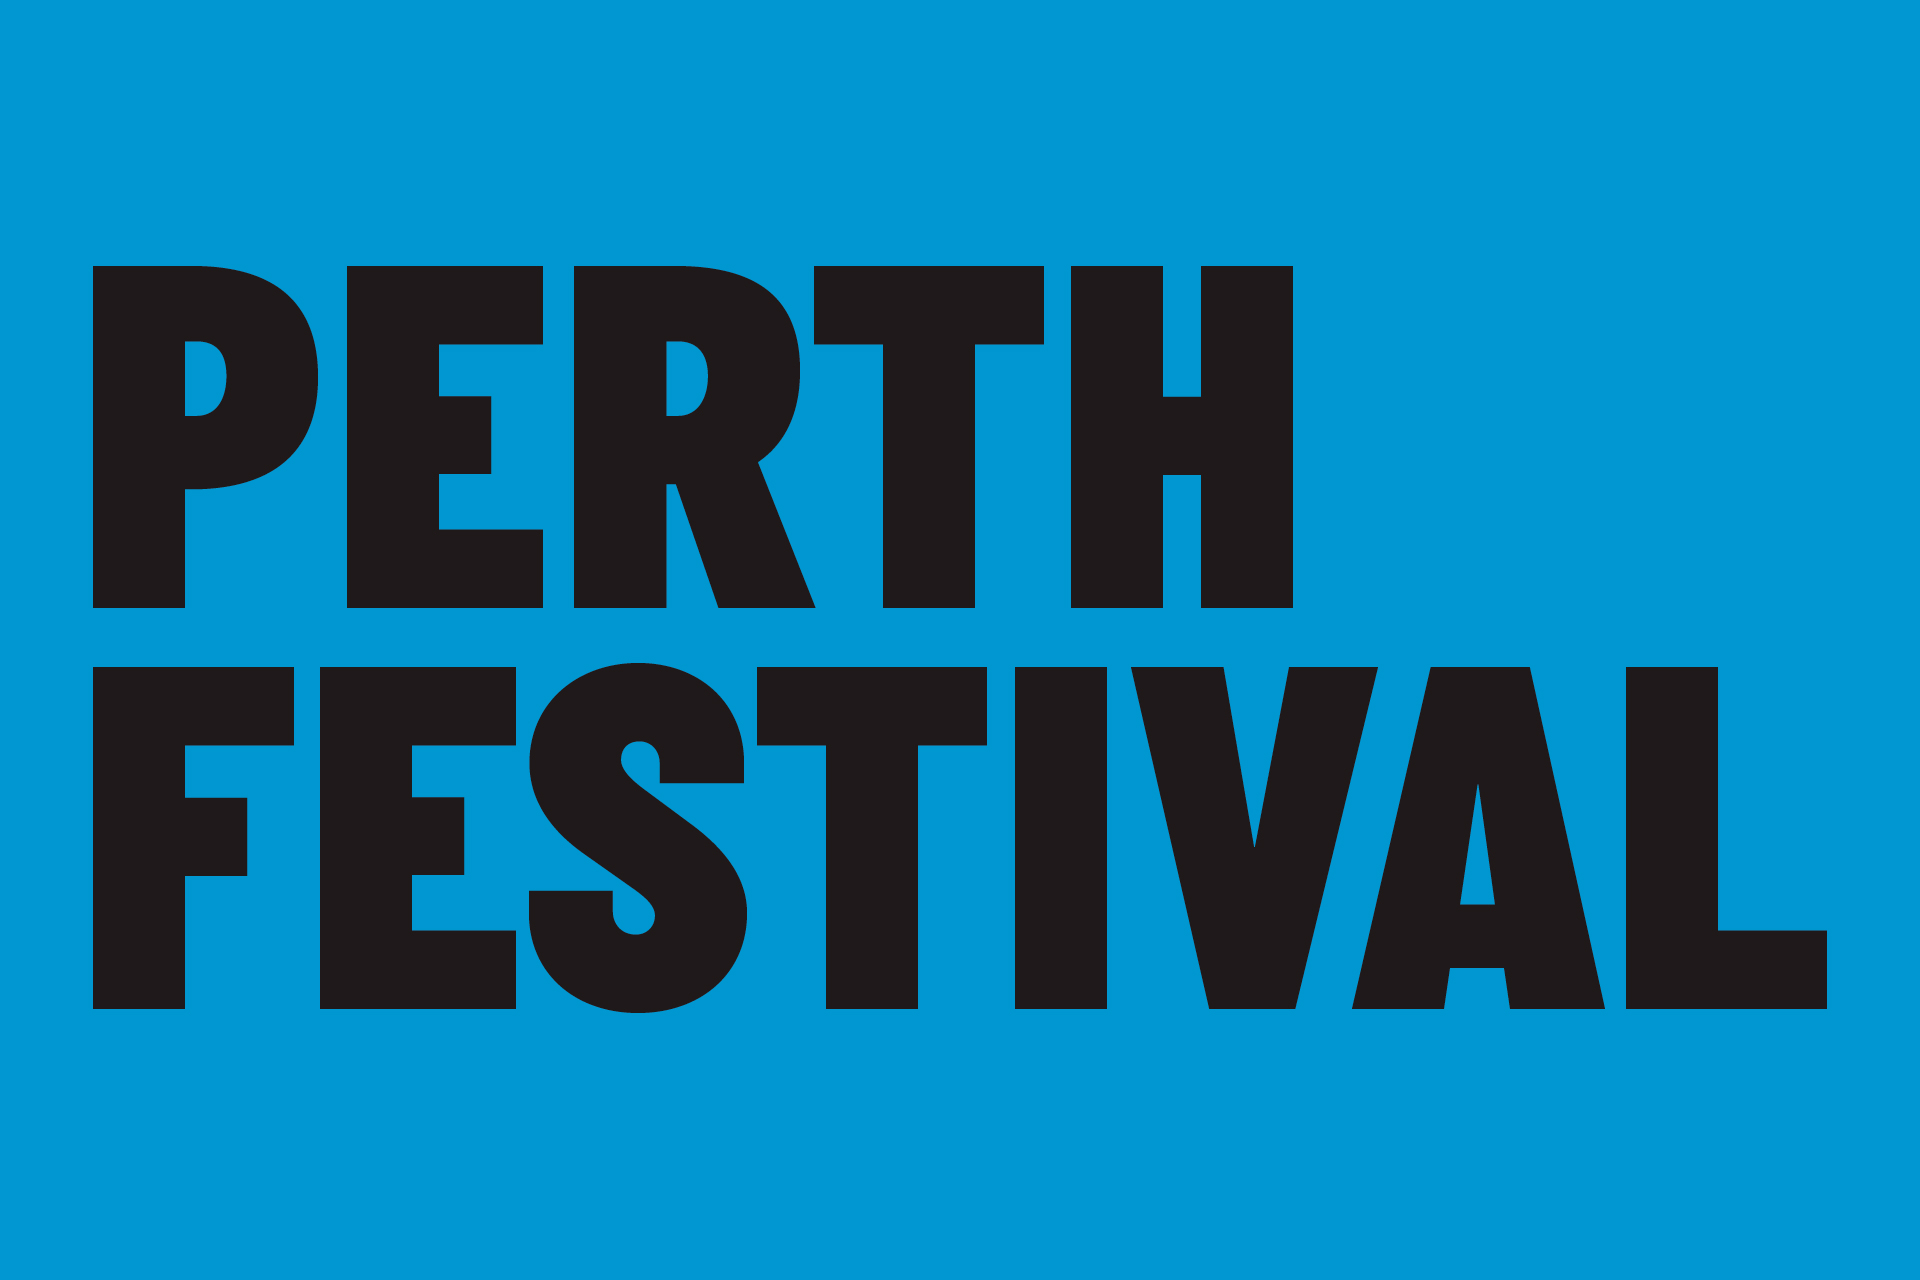 Perth Festival 2004 - 2007